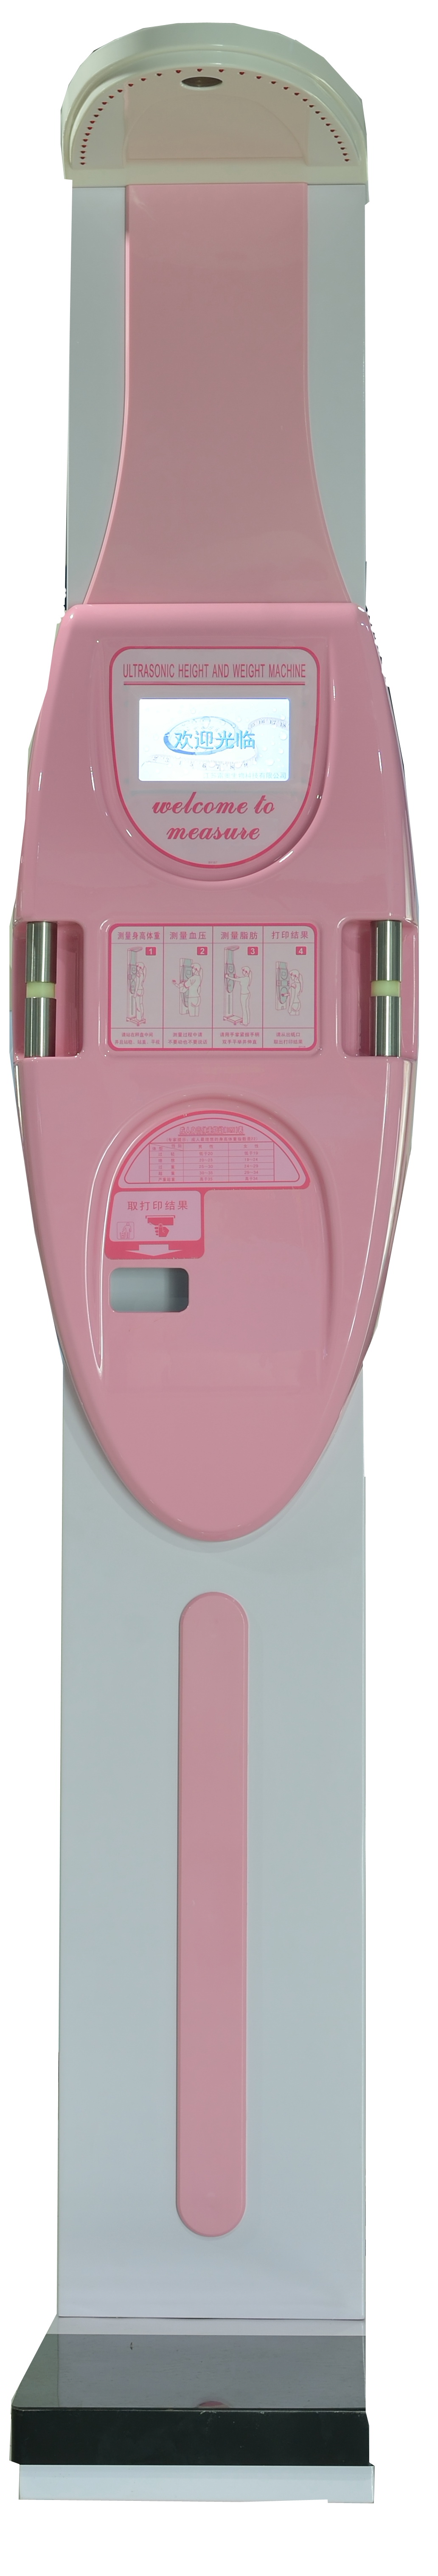 LEO-7201F全自动身高体重血压测量仪